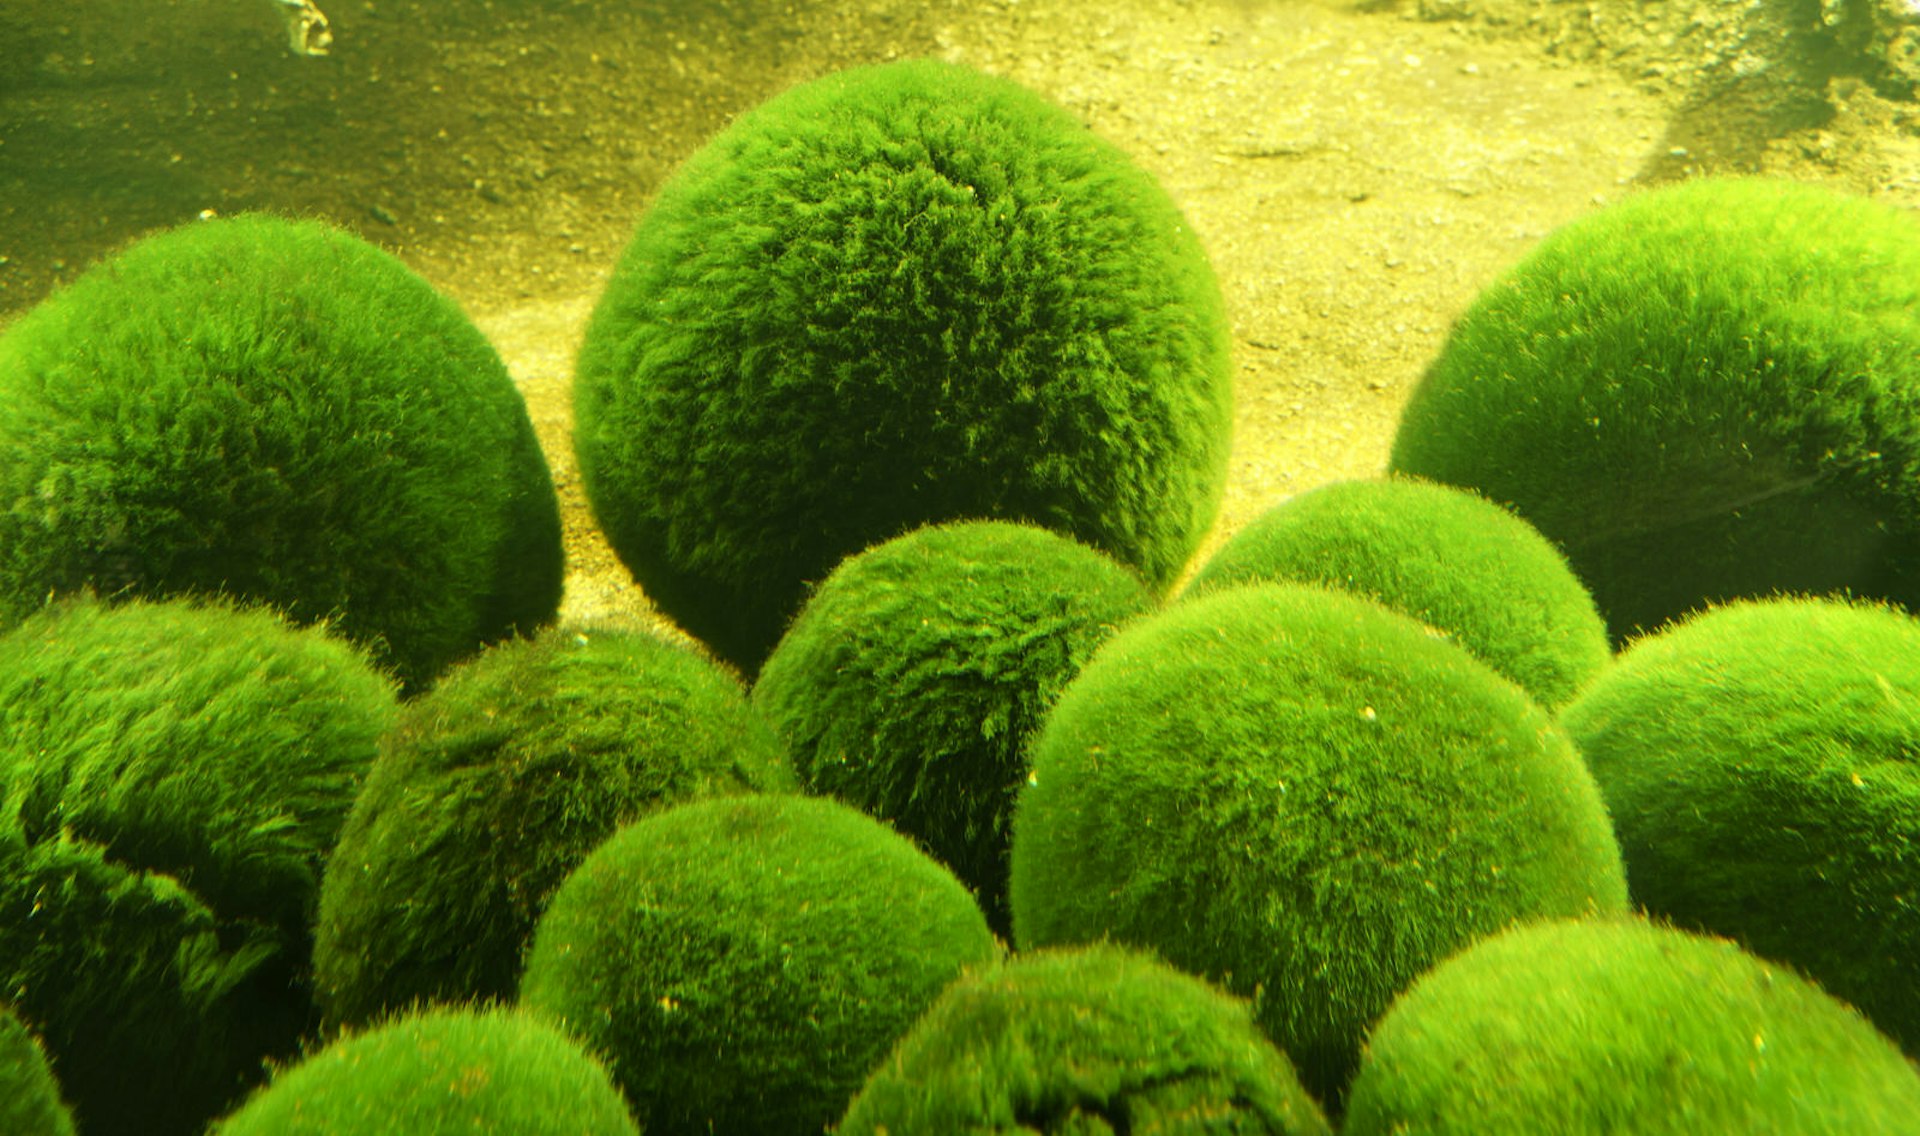 Marimo algal balls in aquarium, Churui Island, Akan-ko (lake), Akan National Park.